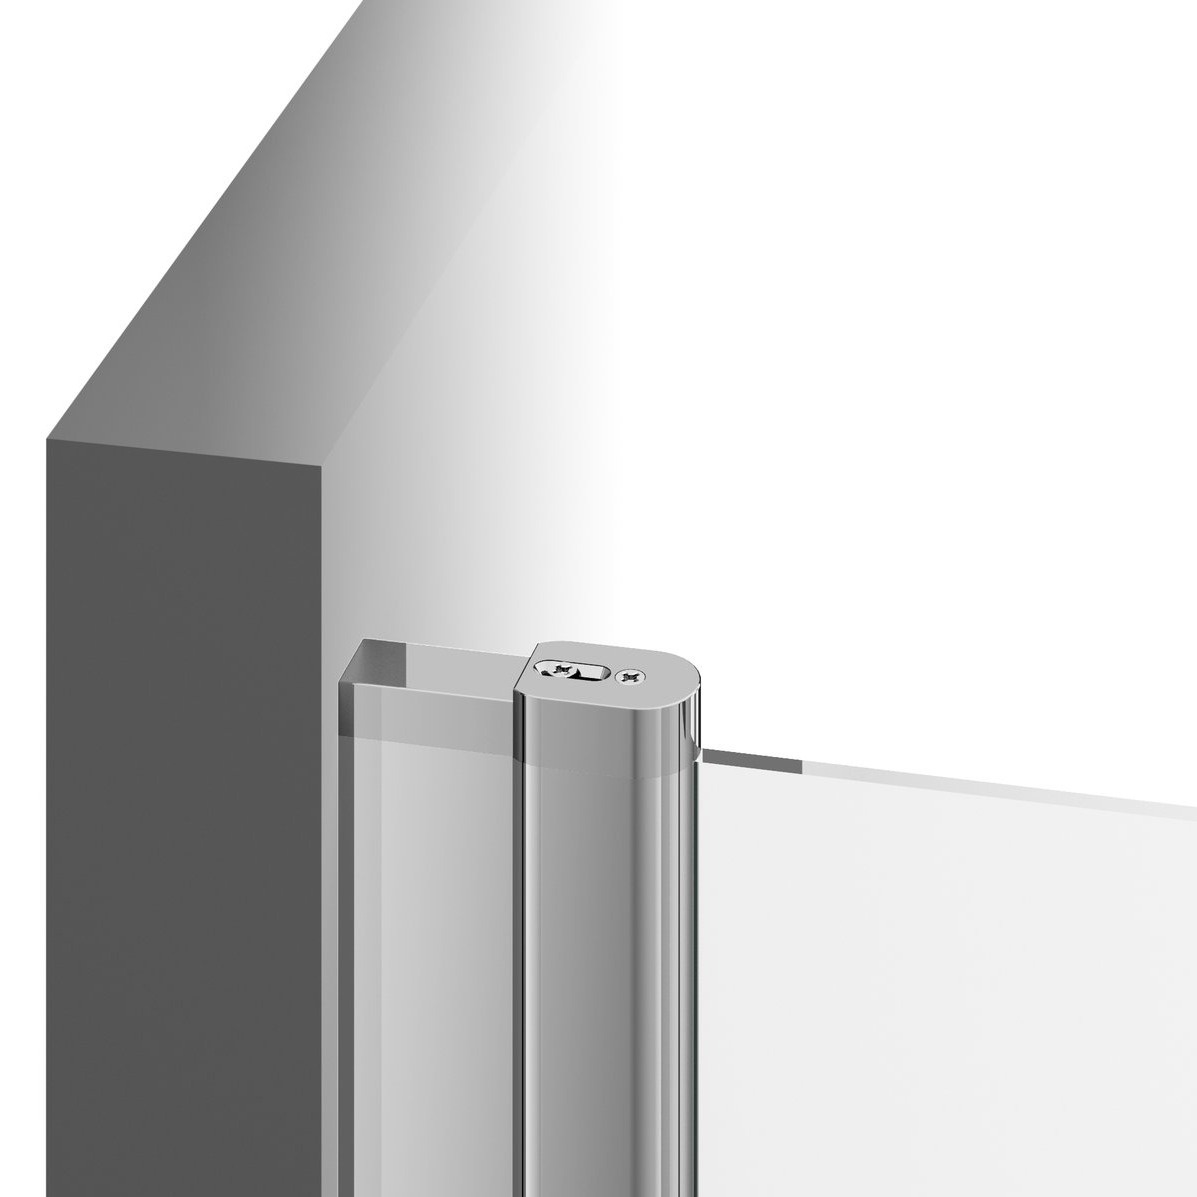 Дверь стеклянная для душевой ниши универсальная распашная двухсекционная RAVAK CHROME CSD2-120 195x120см прозрачное стекло 6мм профиль хром 0QVGCC00Z1